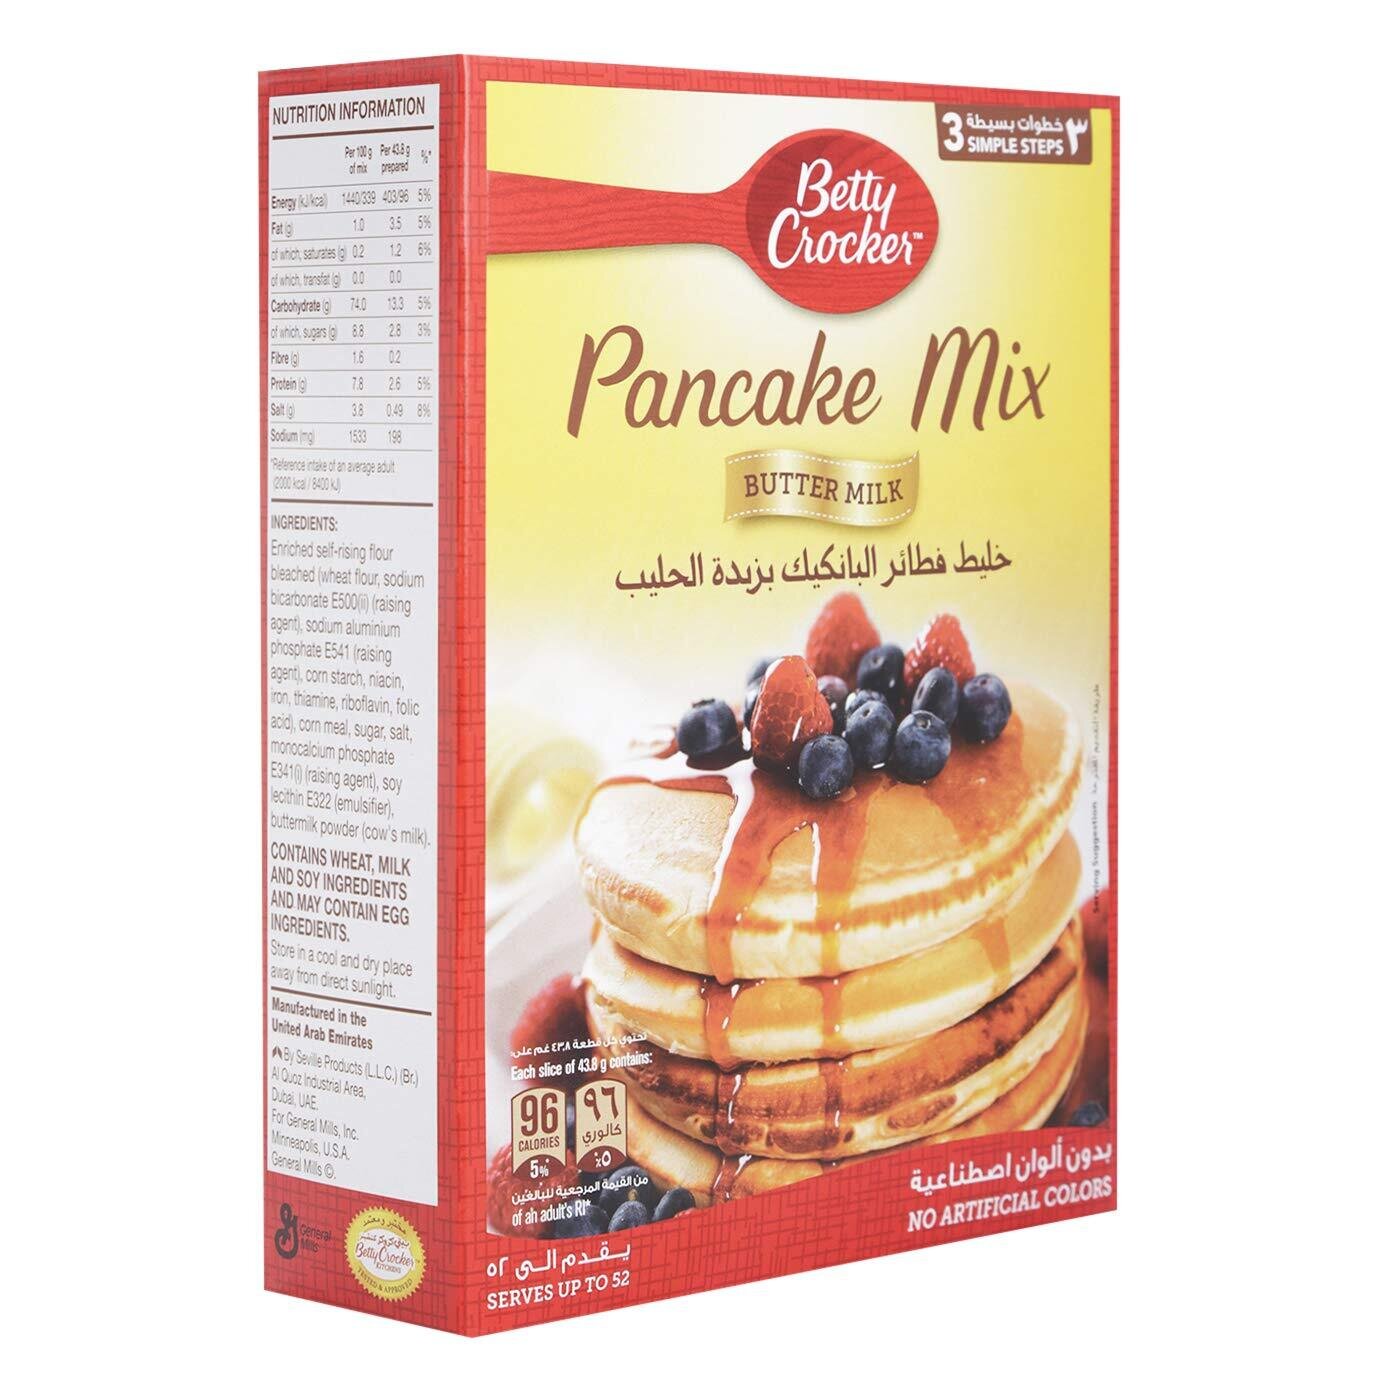 Betty Crocker Pancake Mix Butte Milk